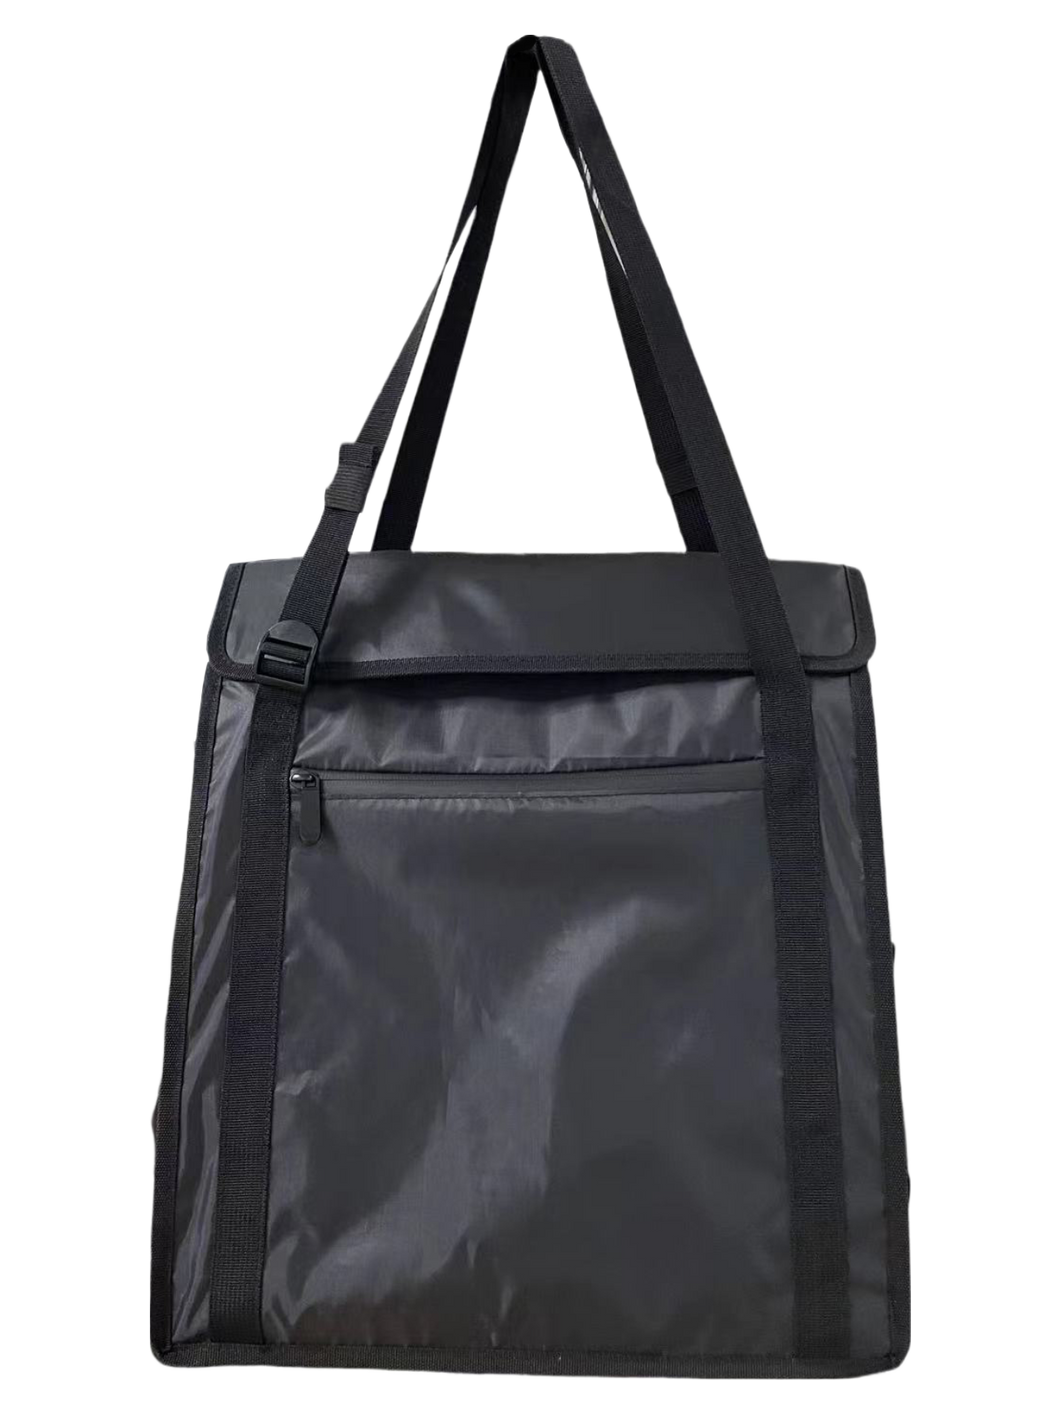 Black Thermal Tote Bag